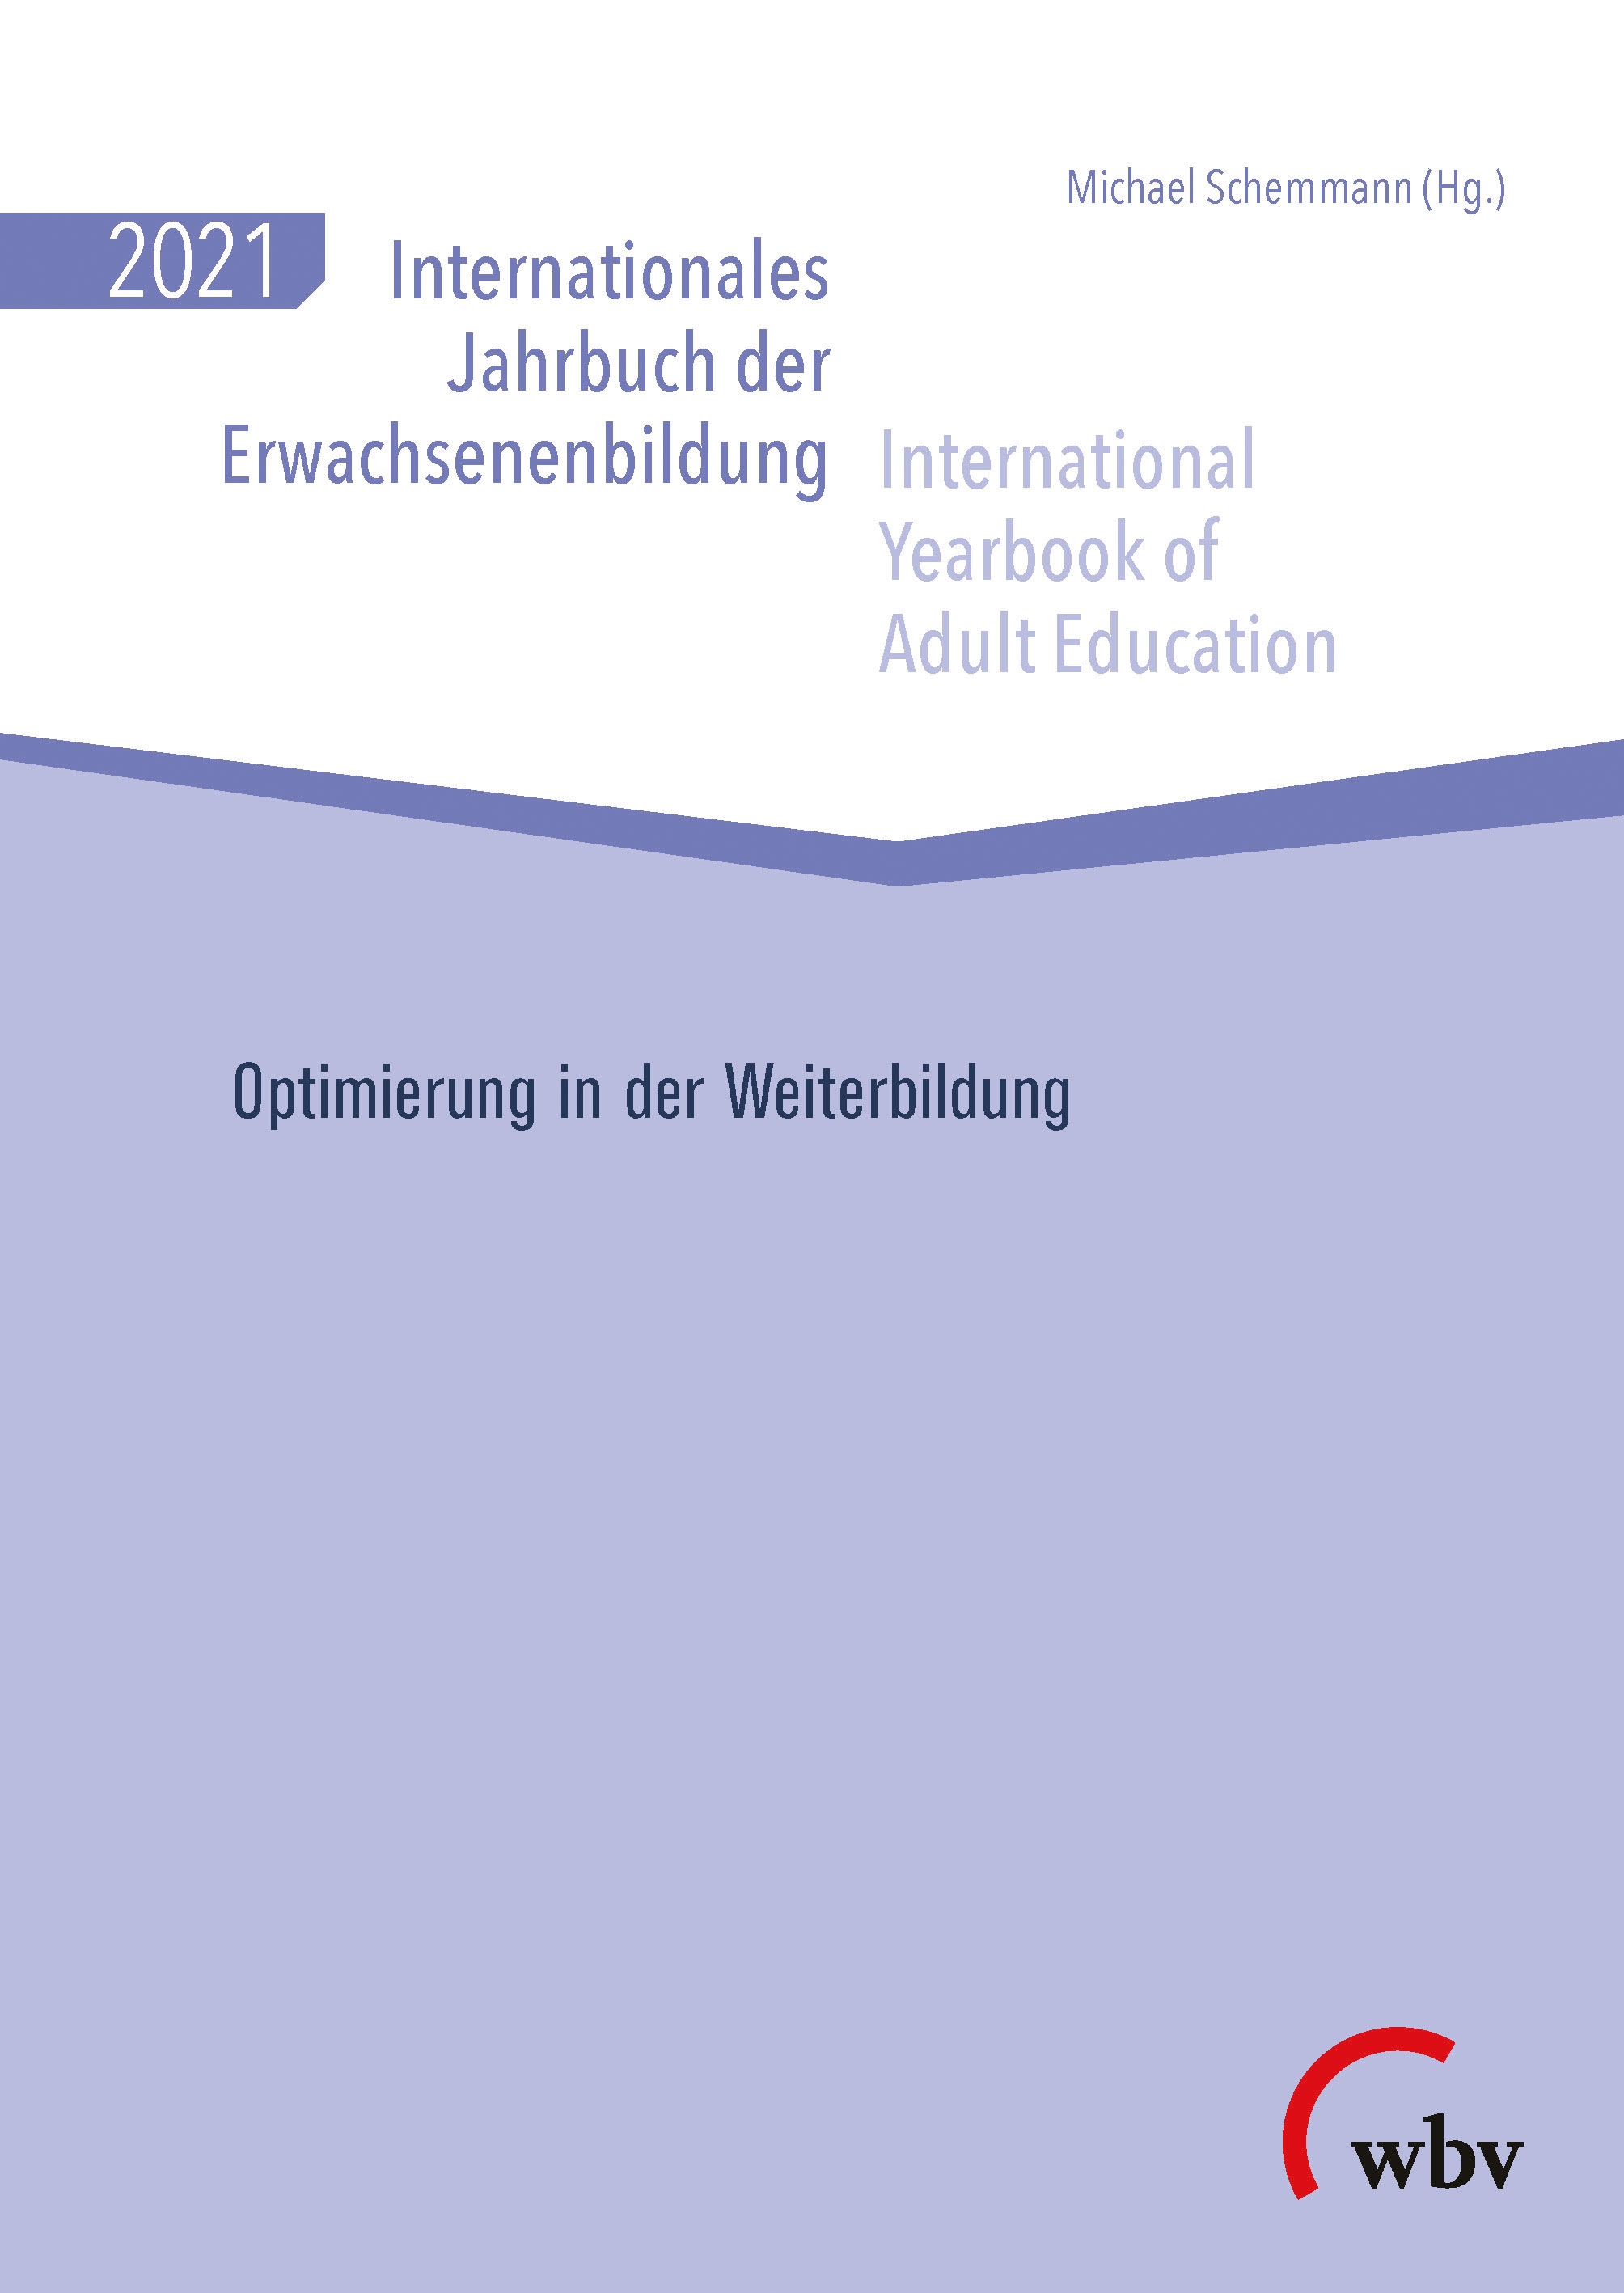 Internationales Jahrbuch der Erwachsenenbildung /International Yearbook of Adult Education 2021